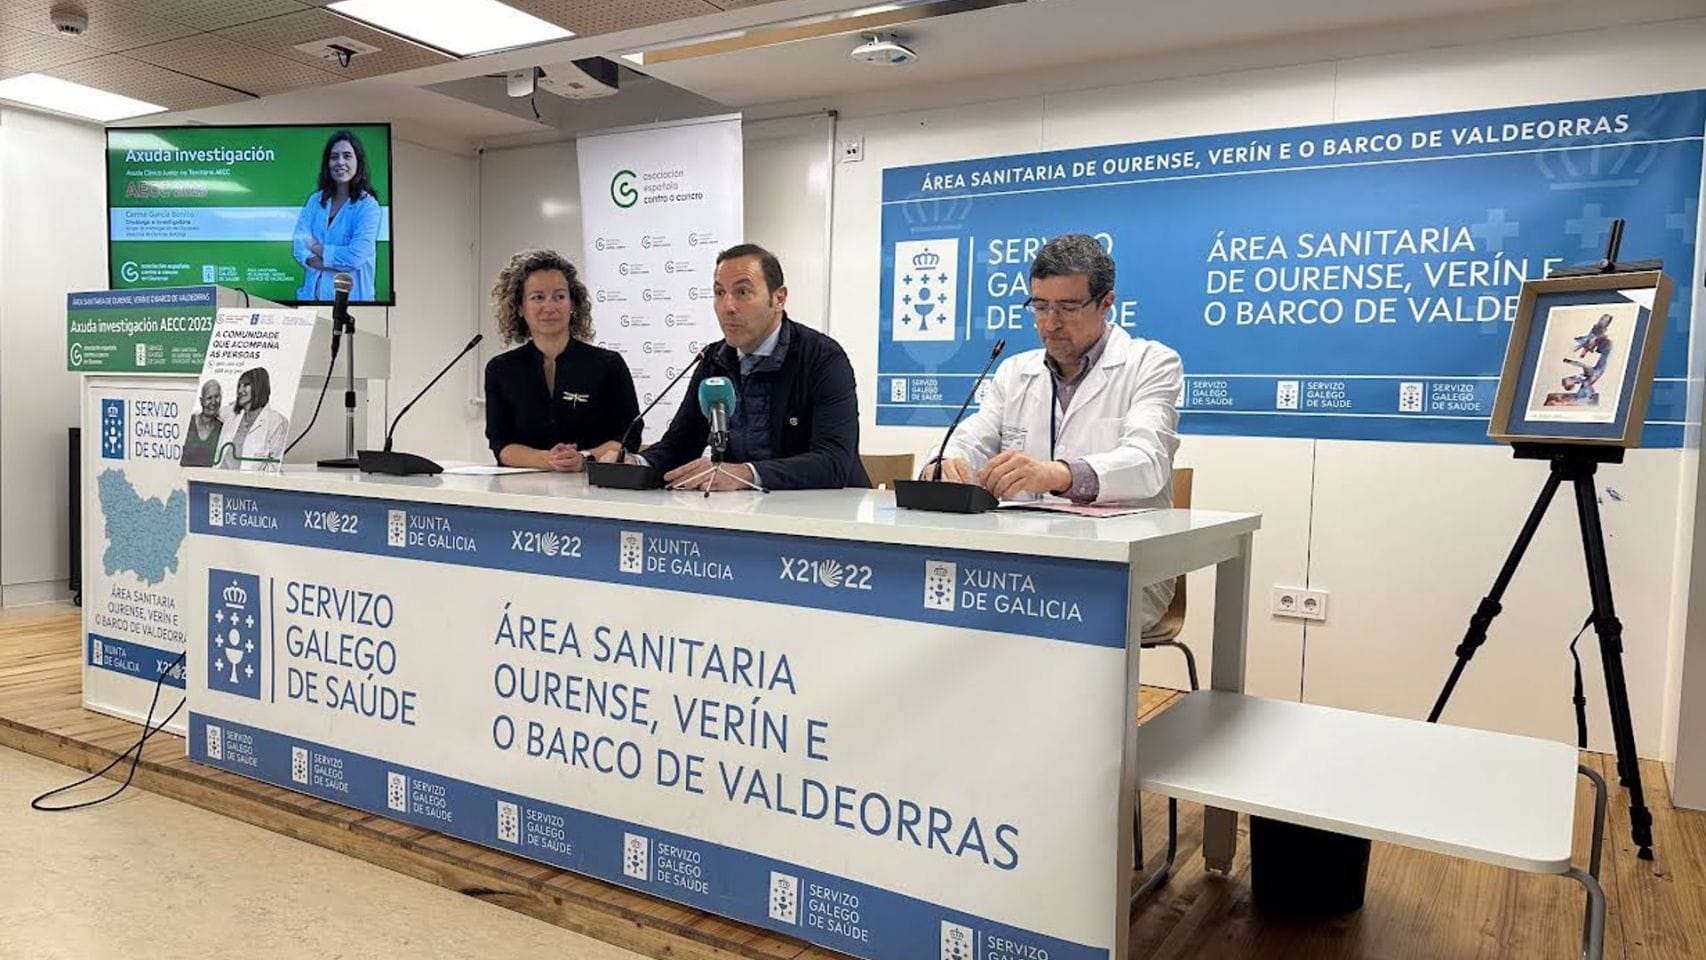 Acto de entrega de la 'Ayuda clínico junior' de la Asociación Contra el Cáncer en el área sanitaria Ourense, Verín e O Barco de Valdeorras.